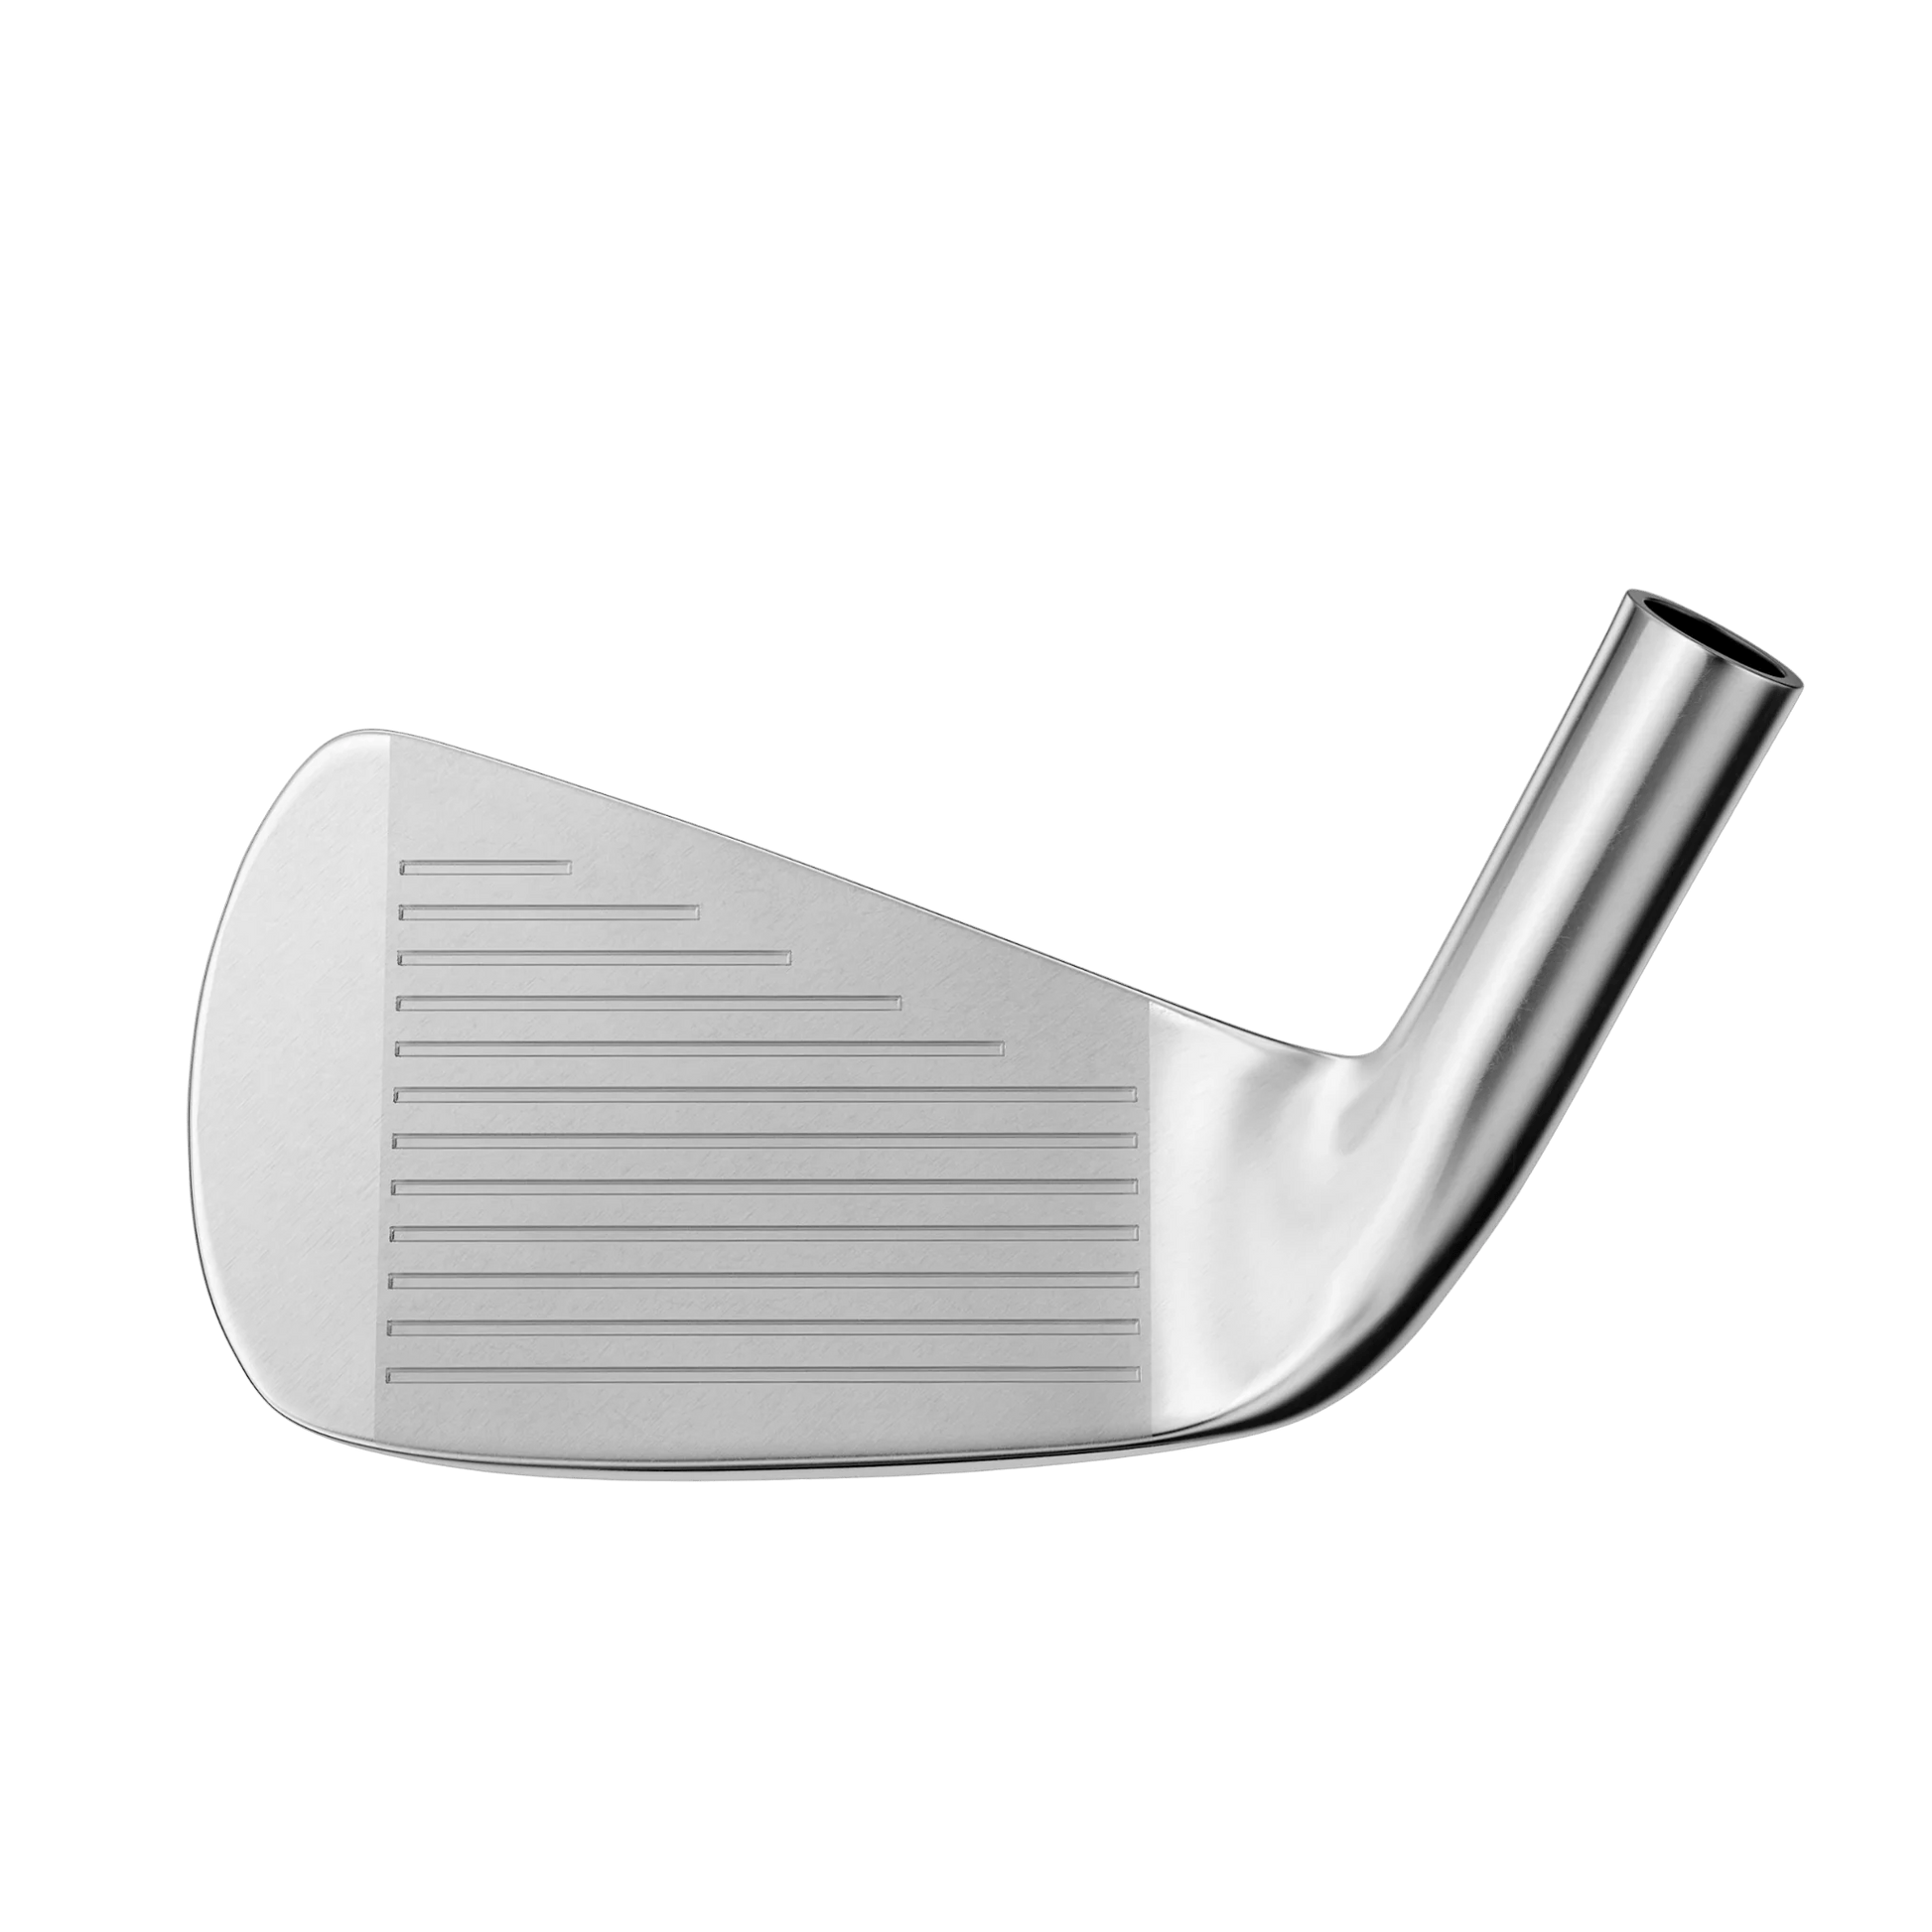 Miura CB-302 | Custom Järnset | Från 5 Klubbor - Low Scores Golf